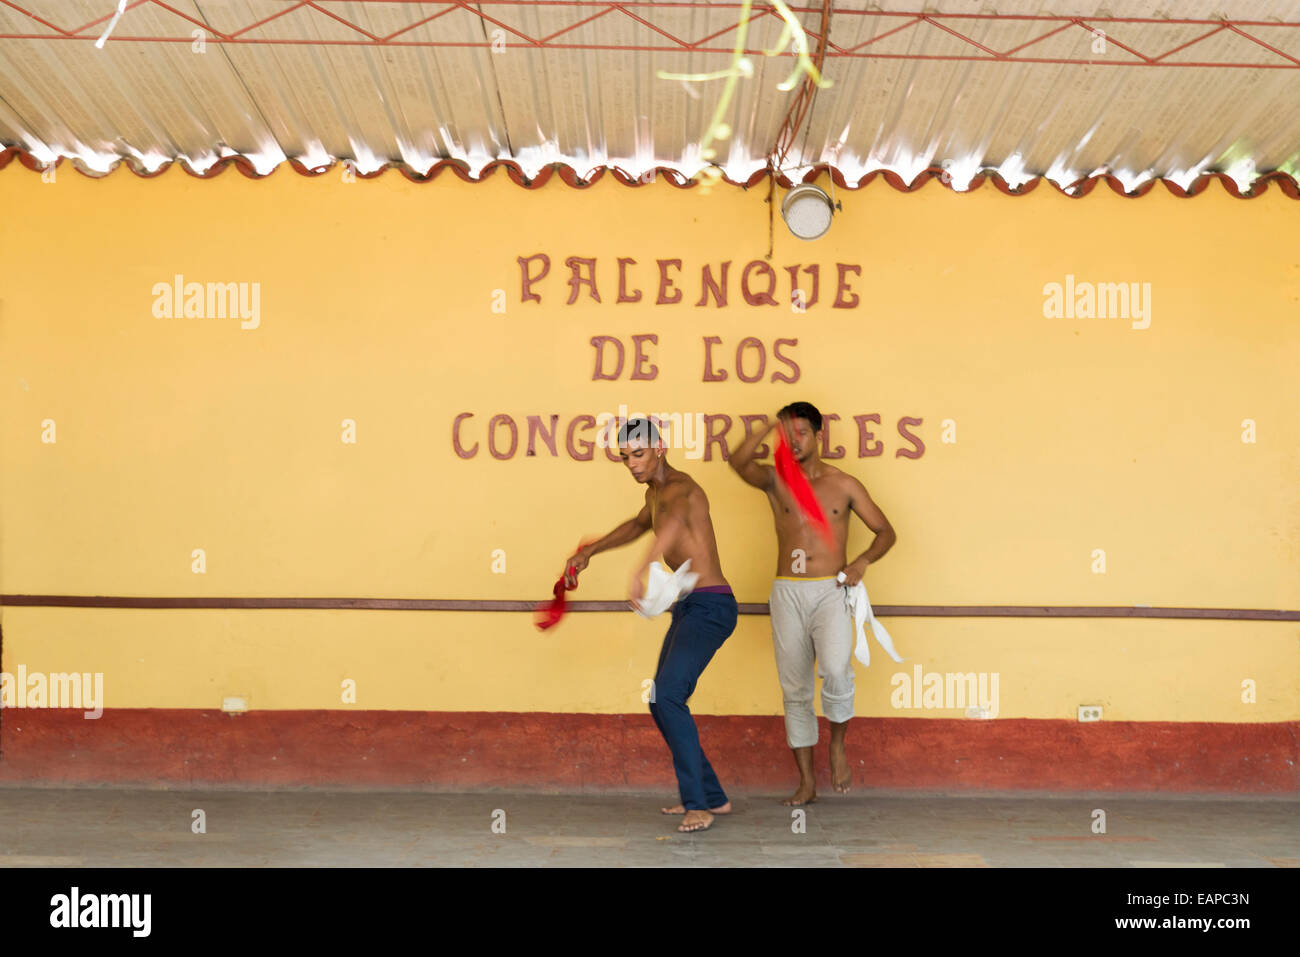 TRINIDAD, CUBA - 8 Maggio 2014: due giovani dance in Palenque de los Congos Reales, nel centro storico di Trinidad, è un c Foto Stock